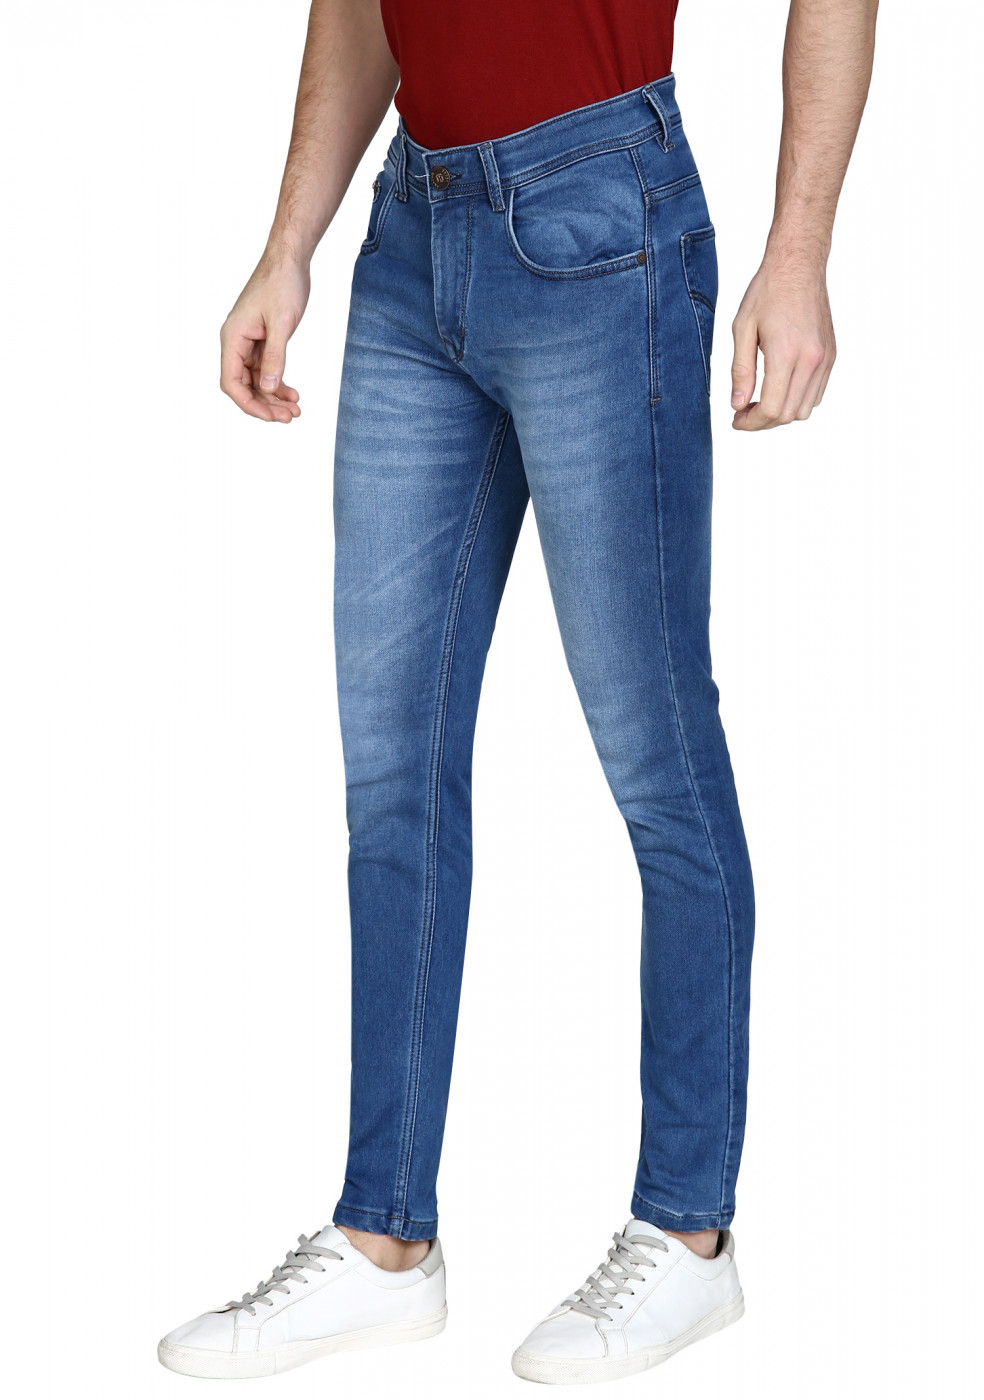 Light Blue Stretchable Denim Jeans For Men